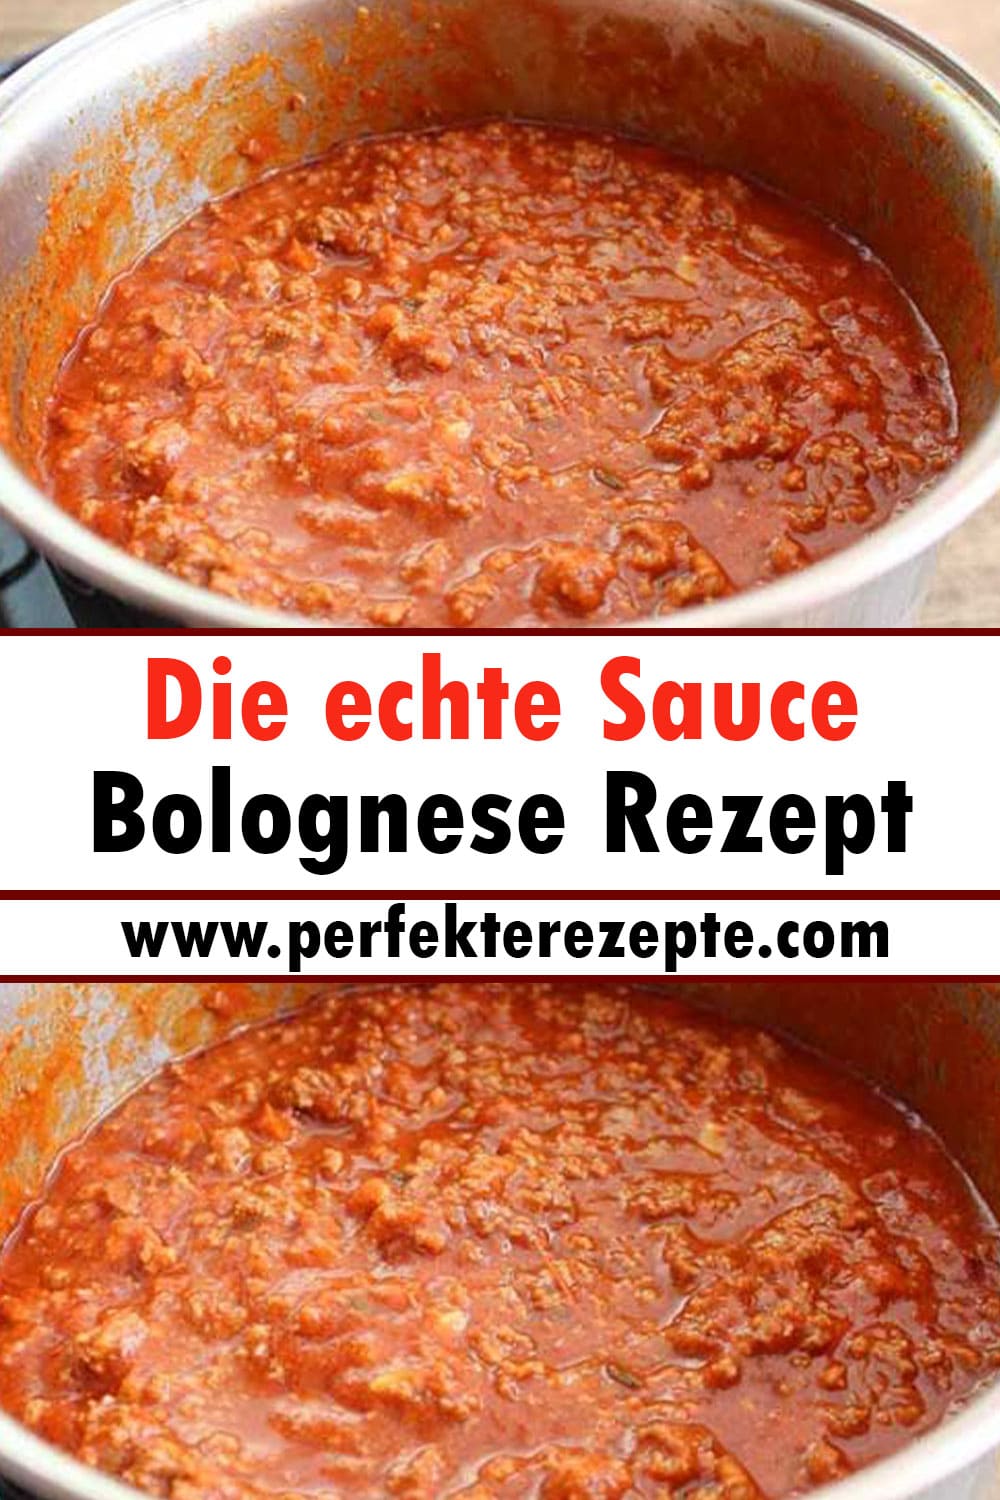 Die echte Sauce Bolognese Rezept